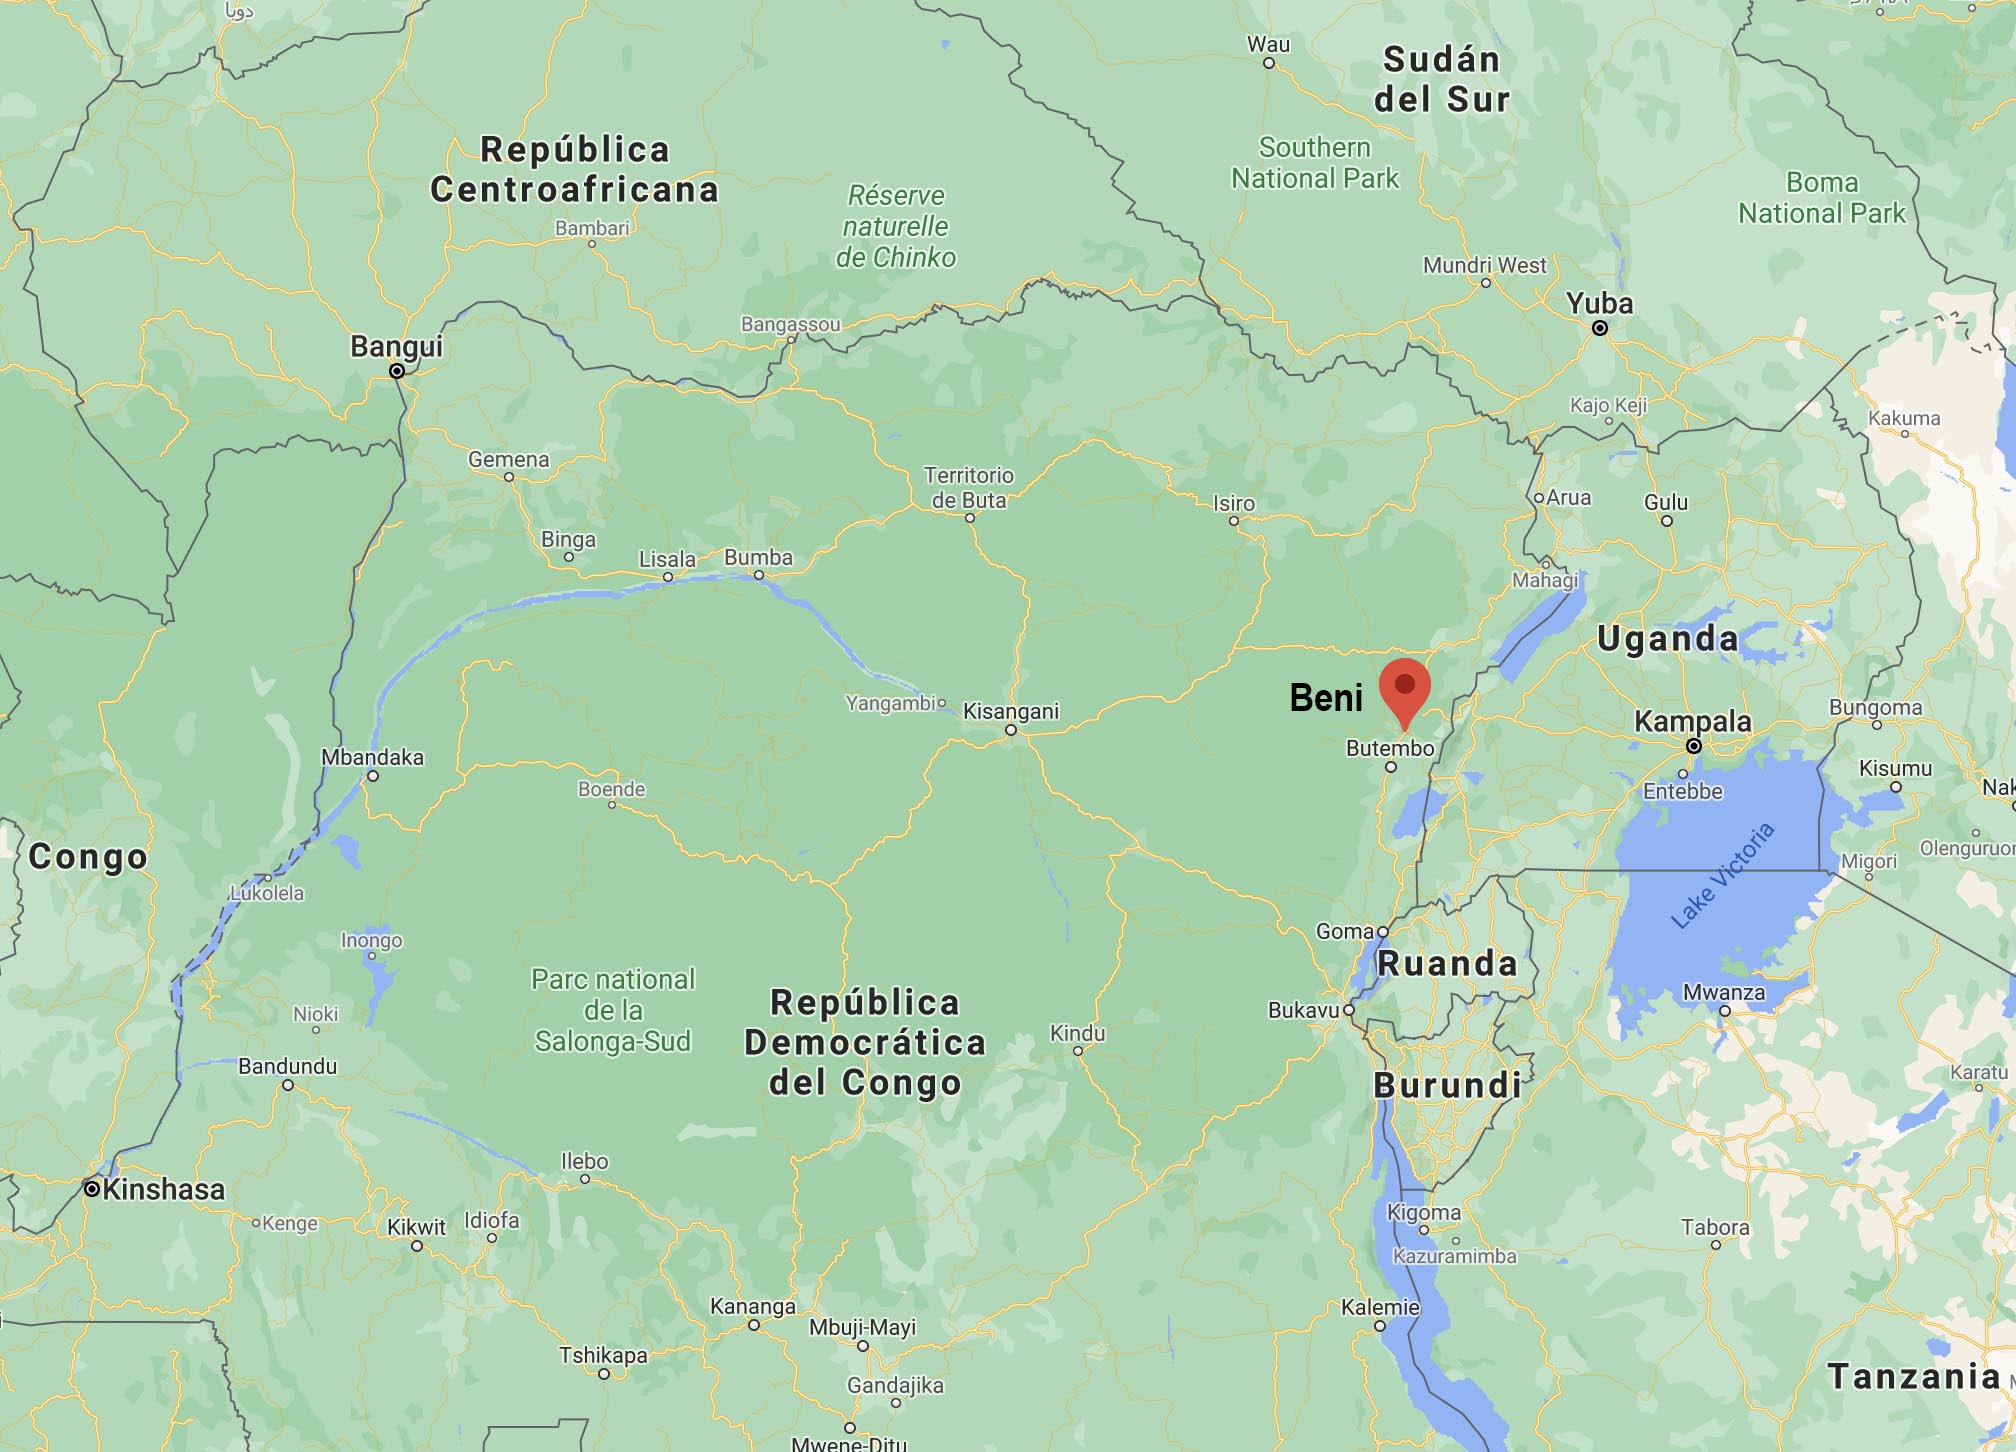 Un mapa de África en Google muestra a Beni ubicado al norte de Ruanda y al oeste del lago Victoria en la República Democrática del Congo. El nombre Beni ha sido agregado por su localizador rojo. Imagen cortesía de Google Maps.